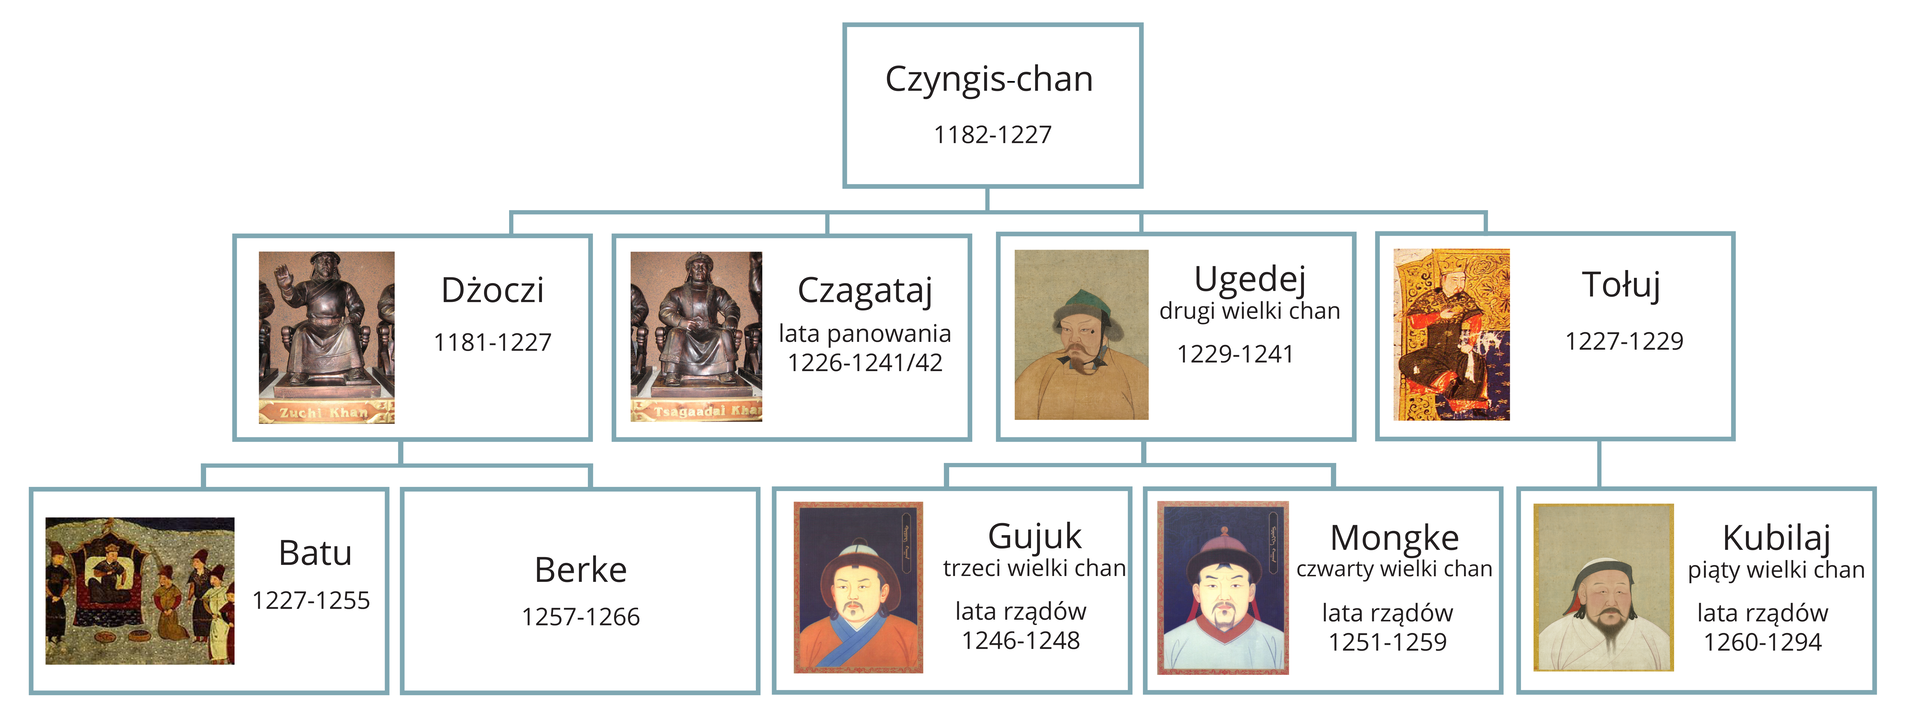 Drzewo genealogiczne Czingis‑chana. Na szczycie znajduje się Cingis‑chan (1182‑1227). W następnym wierszu znajdują się jego synowie: Dżoczi (1182‑1227), Czagataj (lata panowania 1226‑1241/42), Ugedej drugi wielki chan (1229‑1241), Tołuj (1227‑1229). W najniższym wierszu są: Batu (1227‑1255), Berke (1257‑1266) połączeni z Dżoczi, Gujuk trzeci wielki chan (lata panowania 1246‑1248), Monge czwarty wielki chan (lata rządów 1251‑1259) połączeni z Ugedej oraz Kubilaj piąty wielki chan (lata rządów 1260‑1294) połączony z Tołujem.